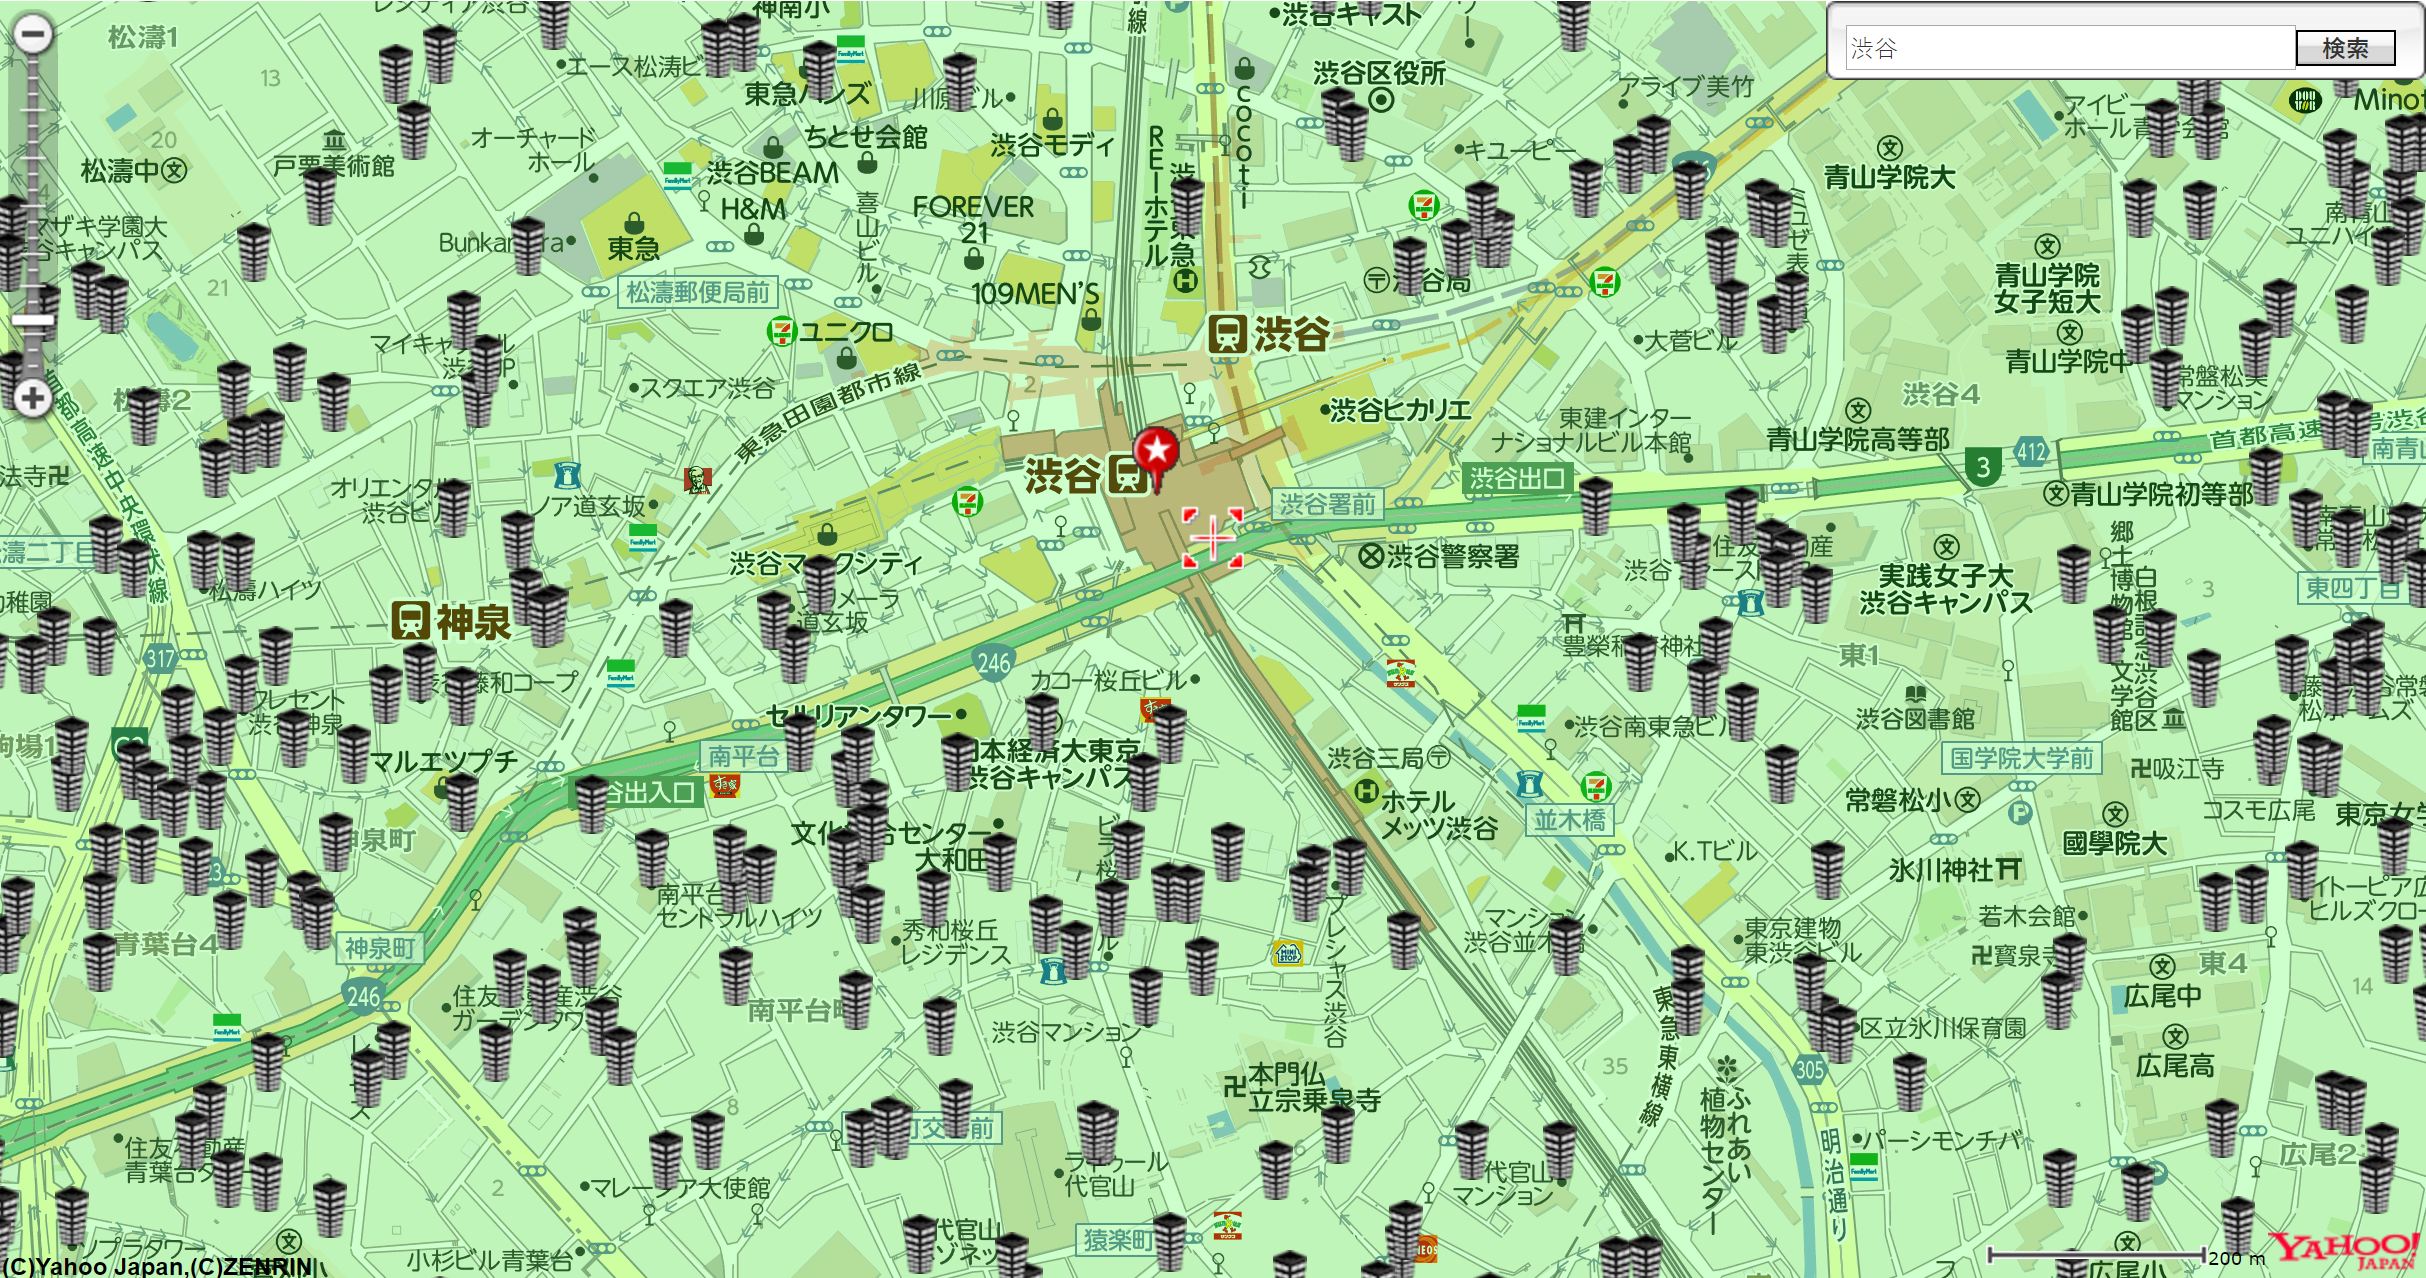 渋谷駅より３km圏内で拡大MAP